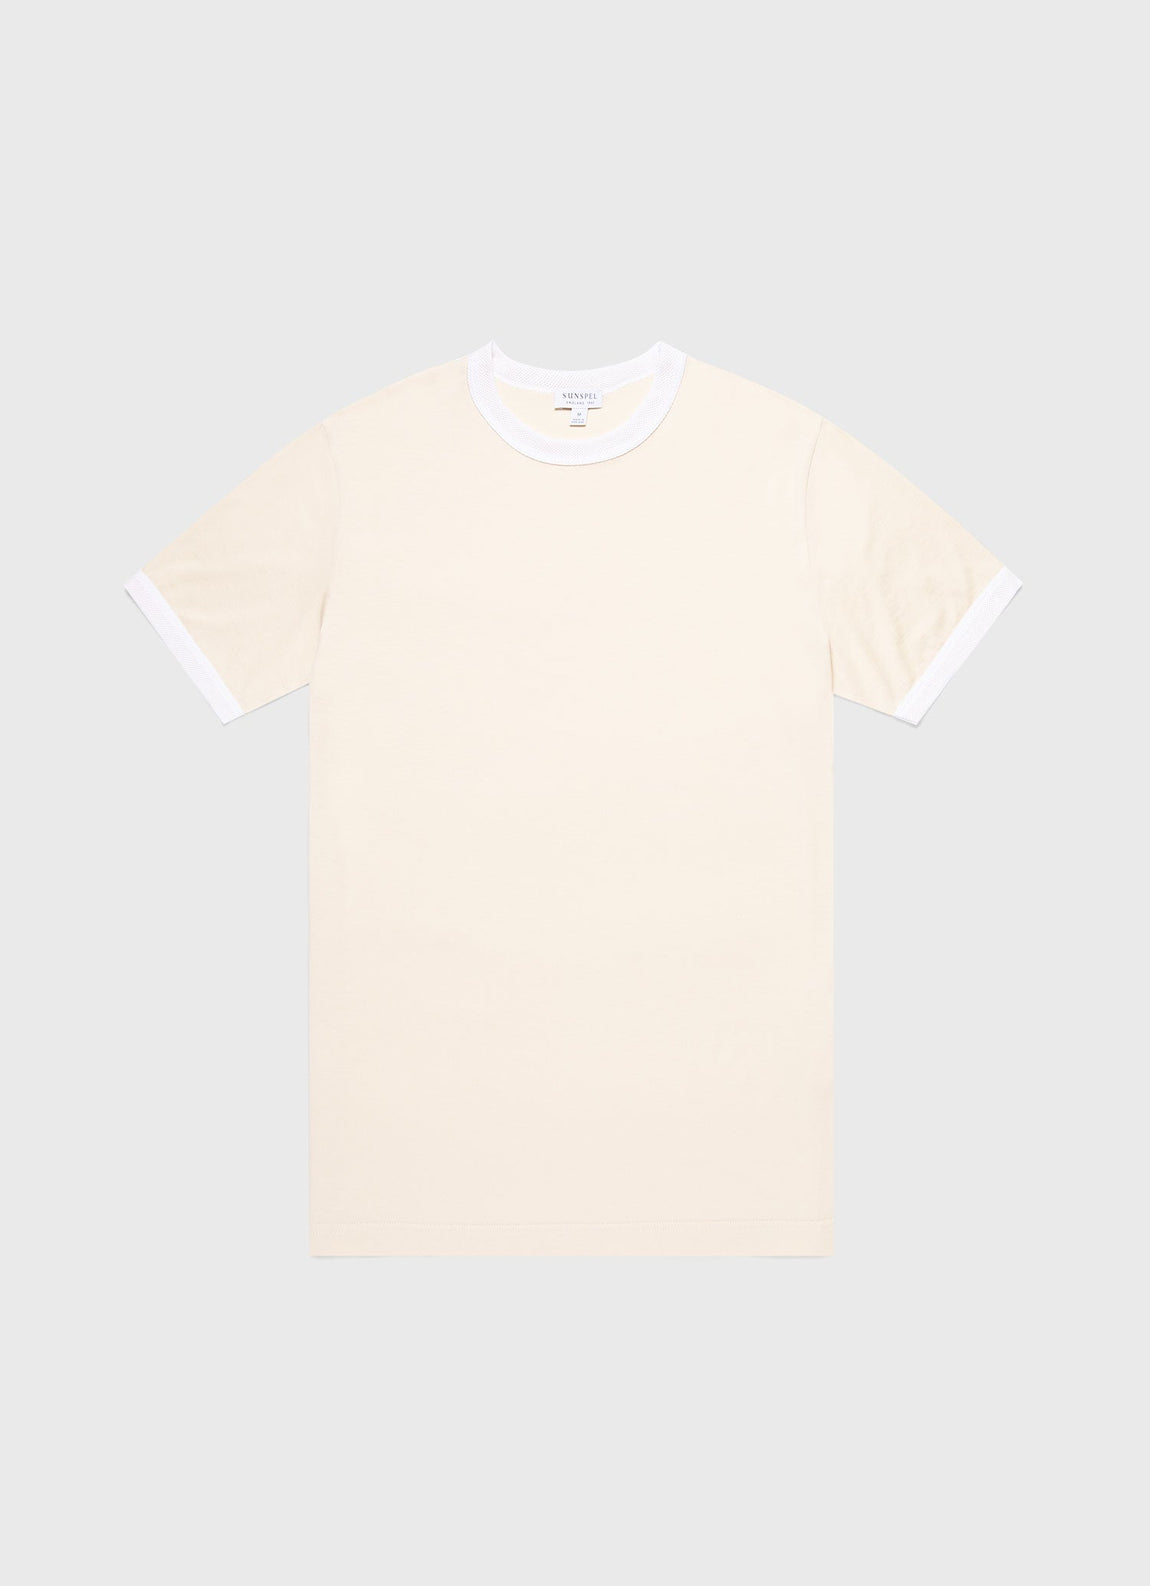 Men's Classic Ringer T-shirt in White